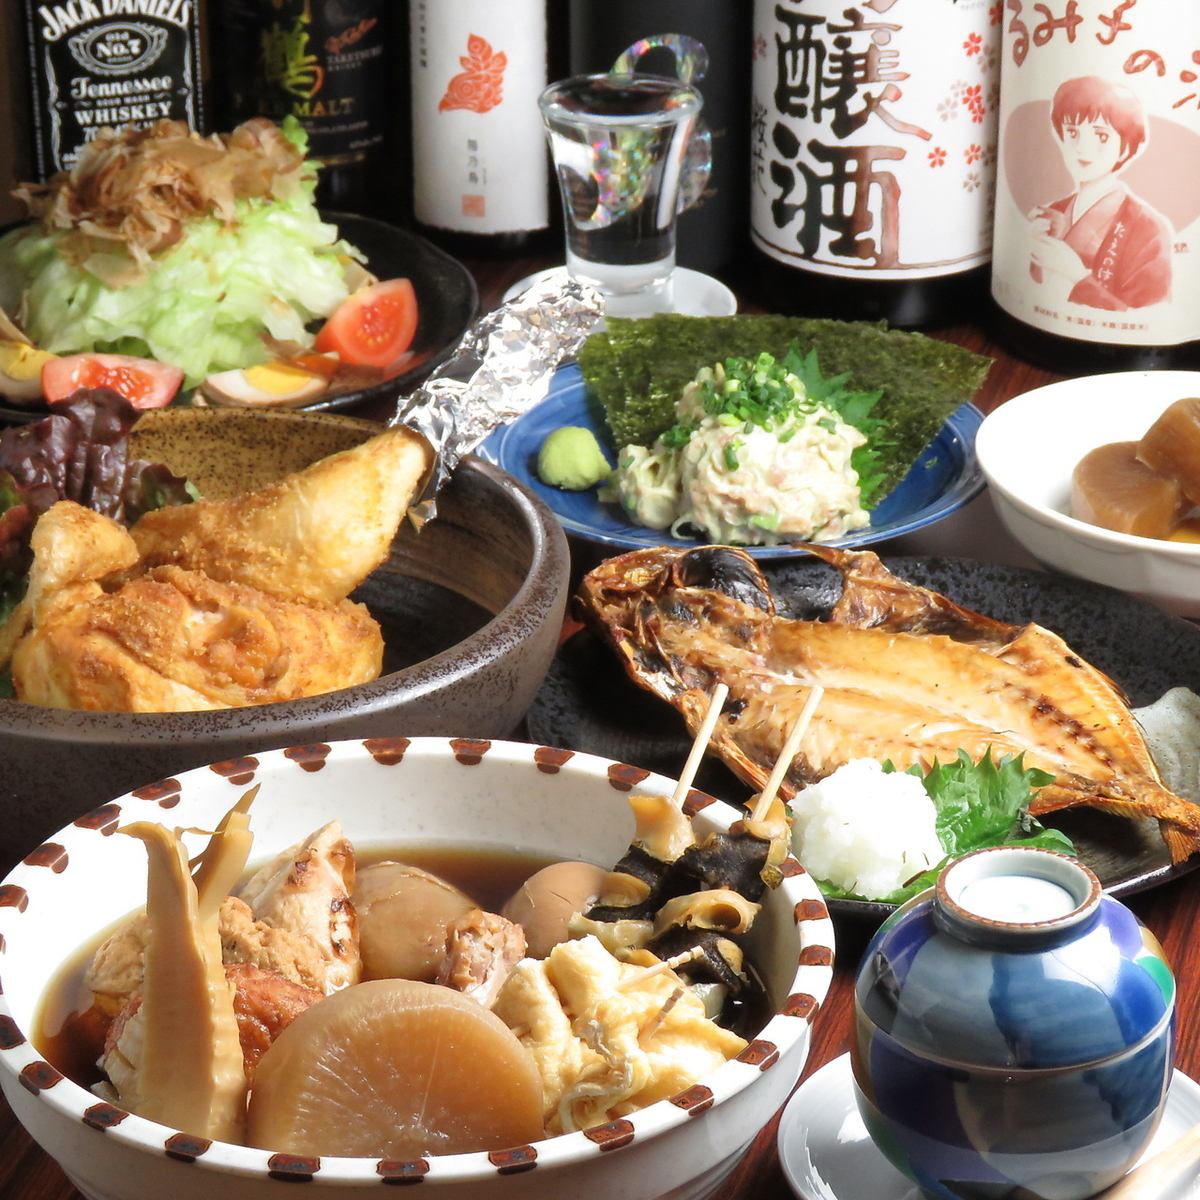 Oden / Okinawa Izakaya 以其味道濃郁的蘿蔔和沖繩美食而聞名。也有許多當地酒♪